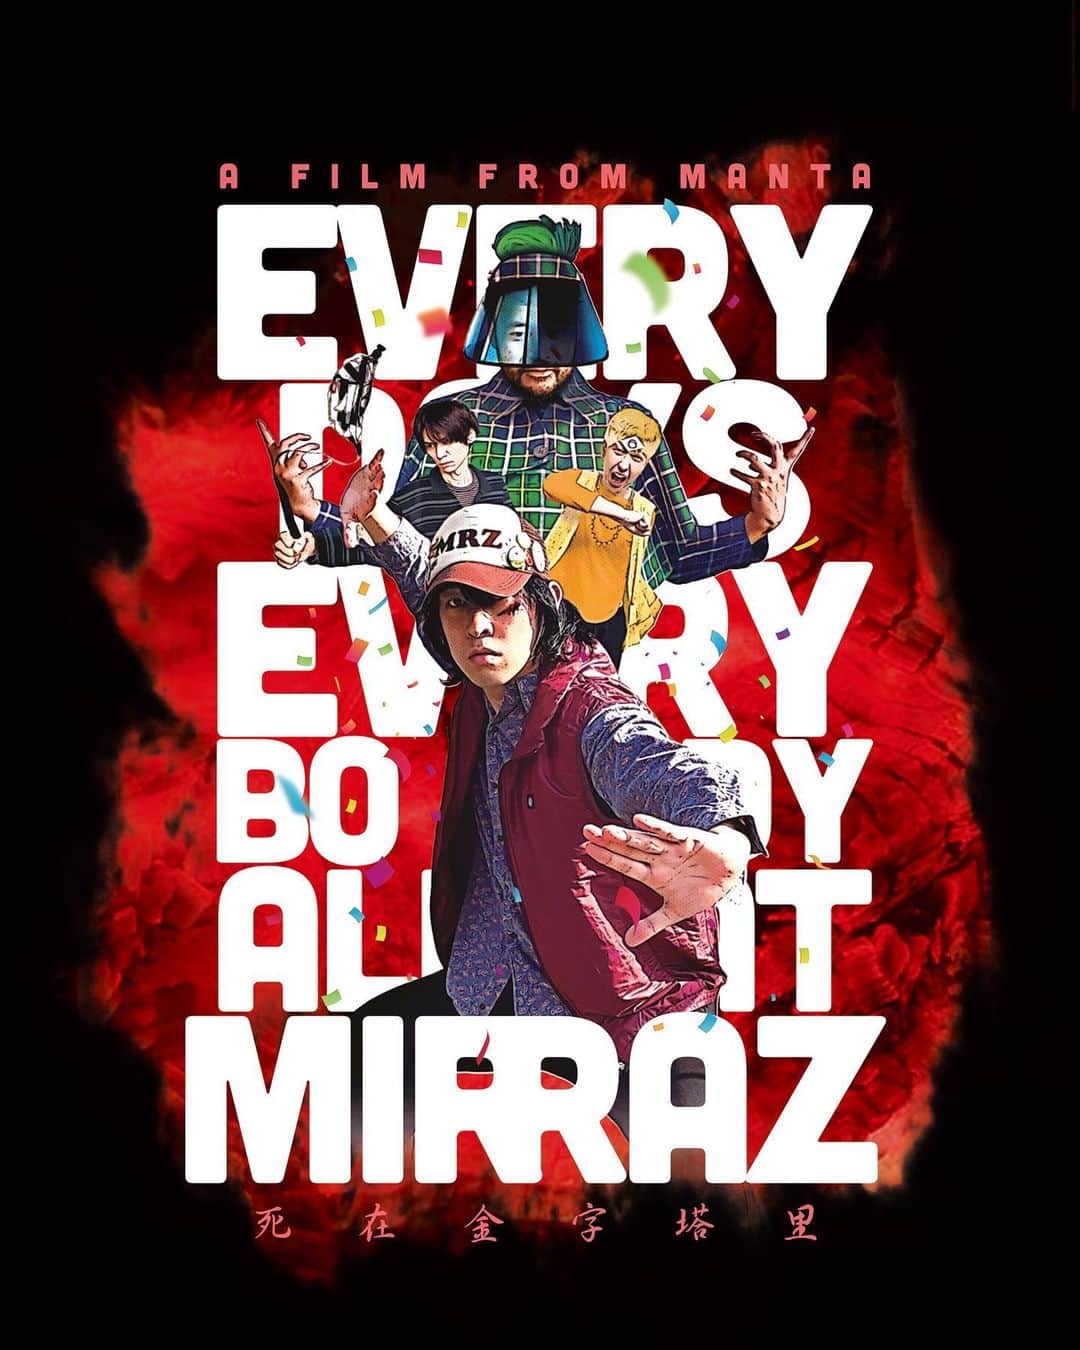 The mirrazのインスタグラム